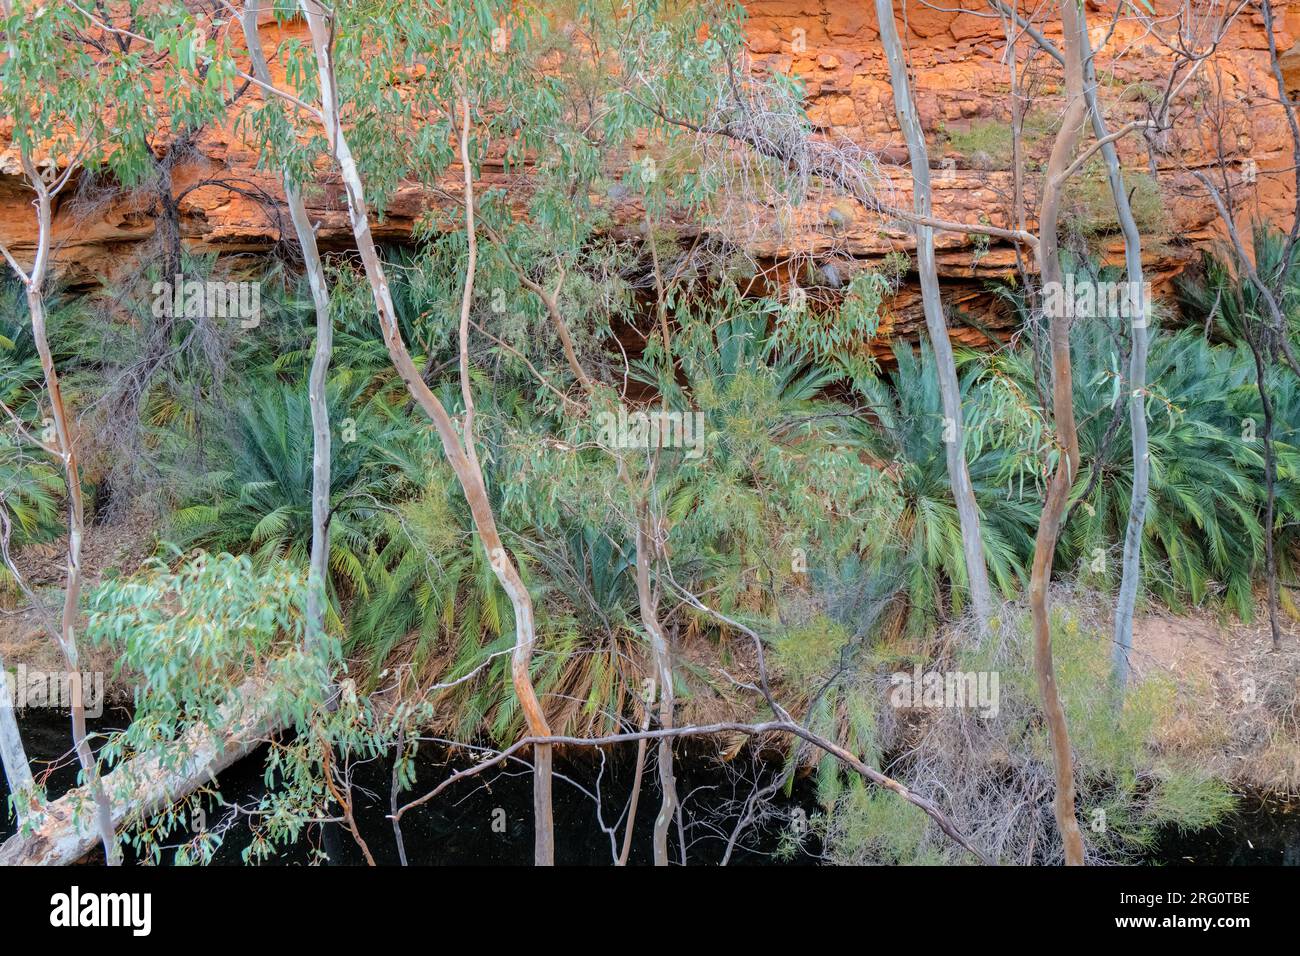 Kings Creek alla base del braccio nord del Kings Canyon fiancheggiato da eucalipti (Corymbia papuana) e MacDonnell Ranges Cycad (Macrozamia macdonnellii) Foto Stock